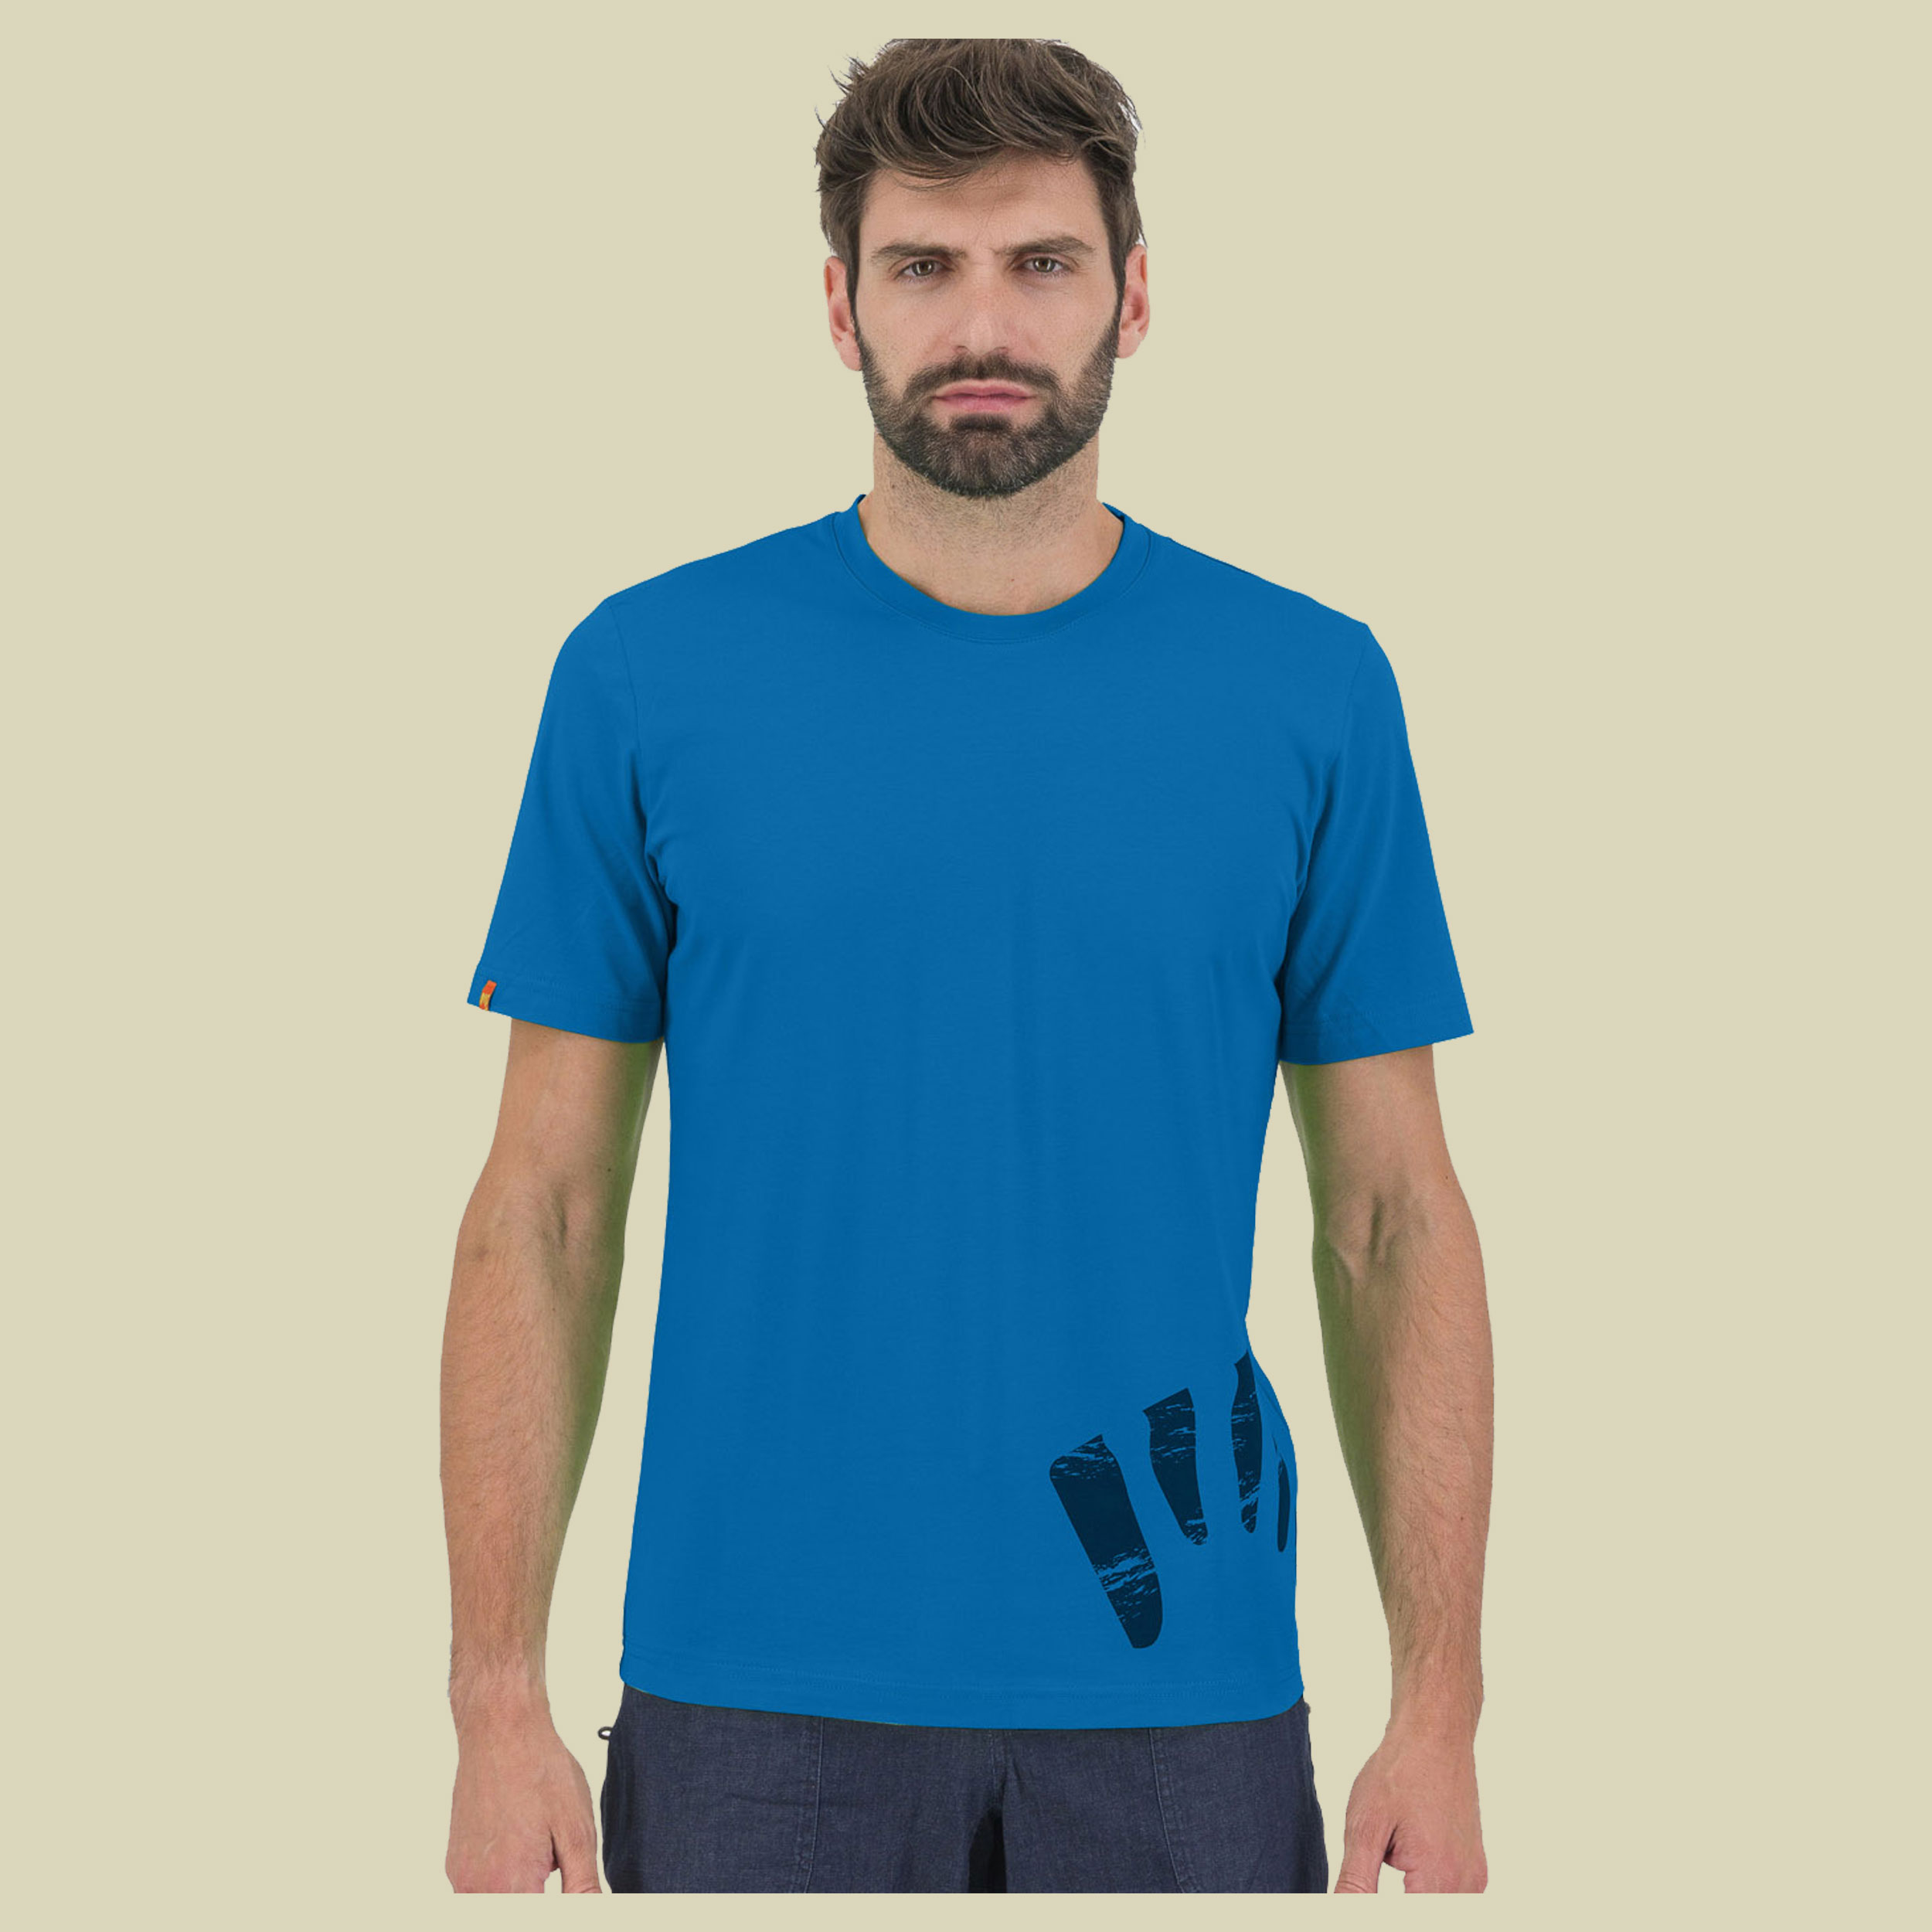 Astro Alpino T-Shirt Men